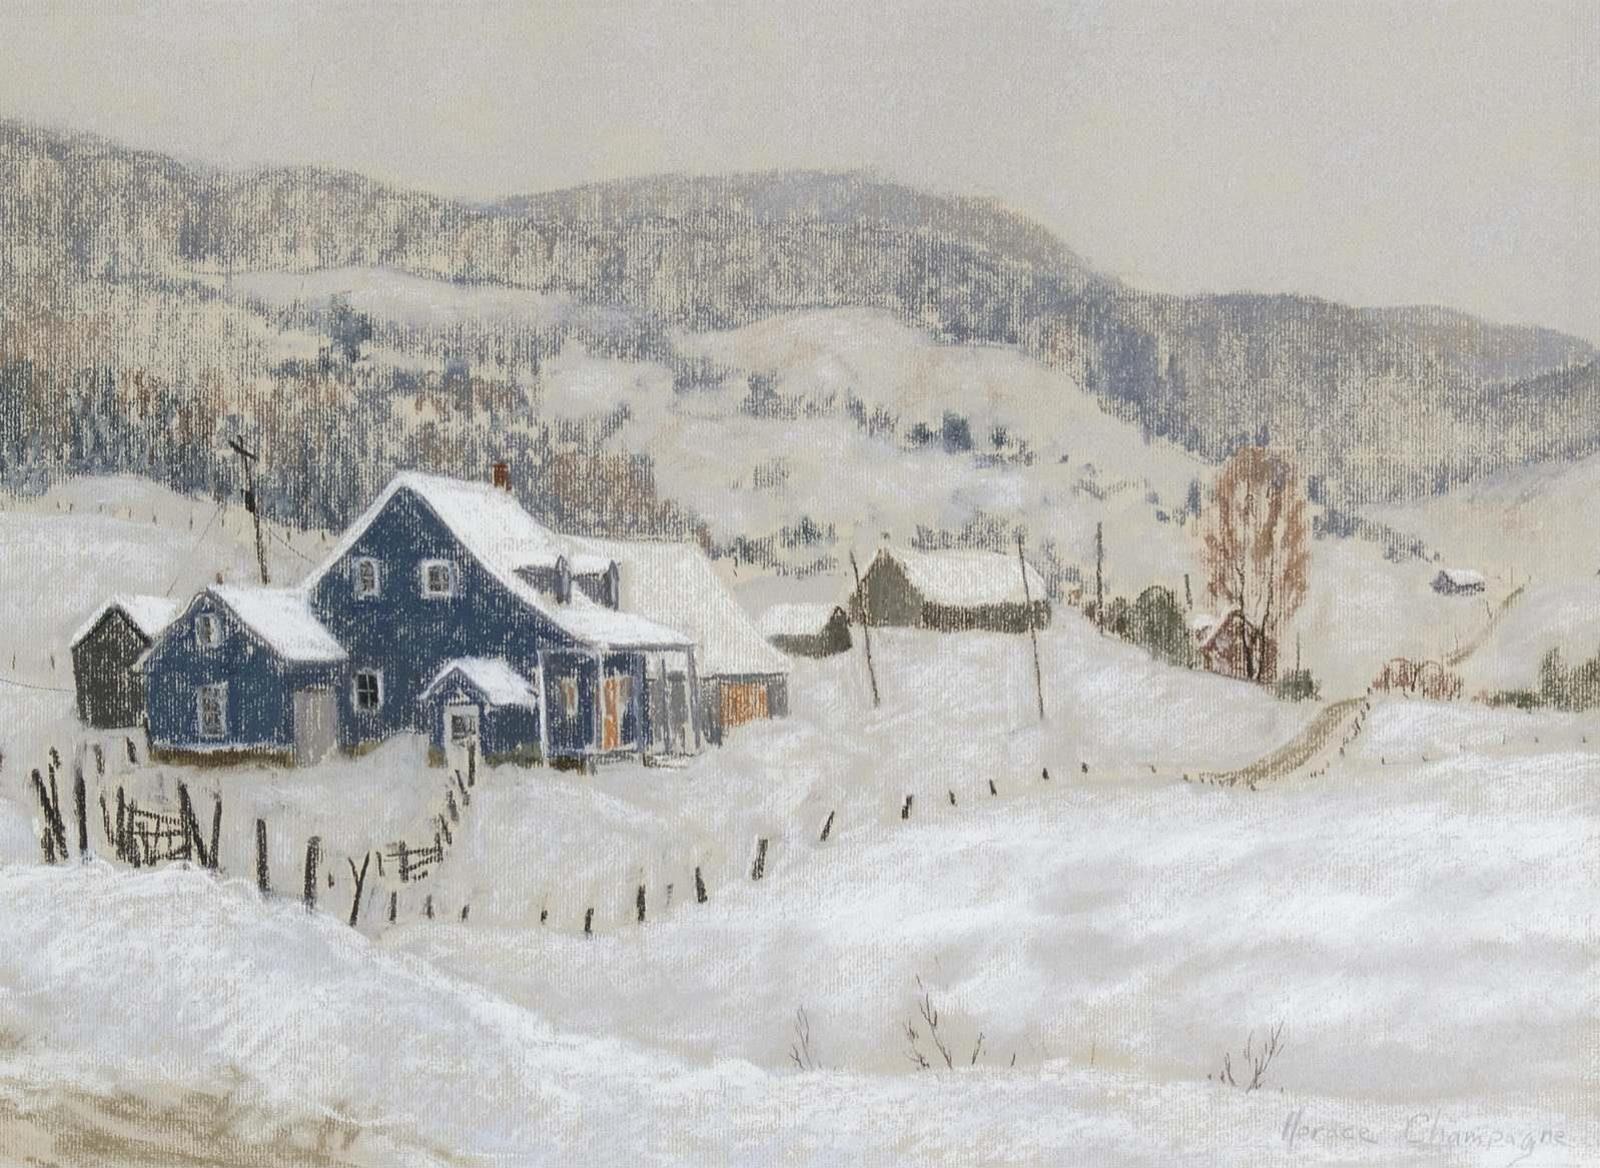 Horace Champagne (1937) - Winter, Les Eboulements